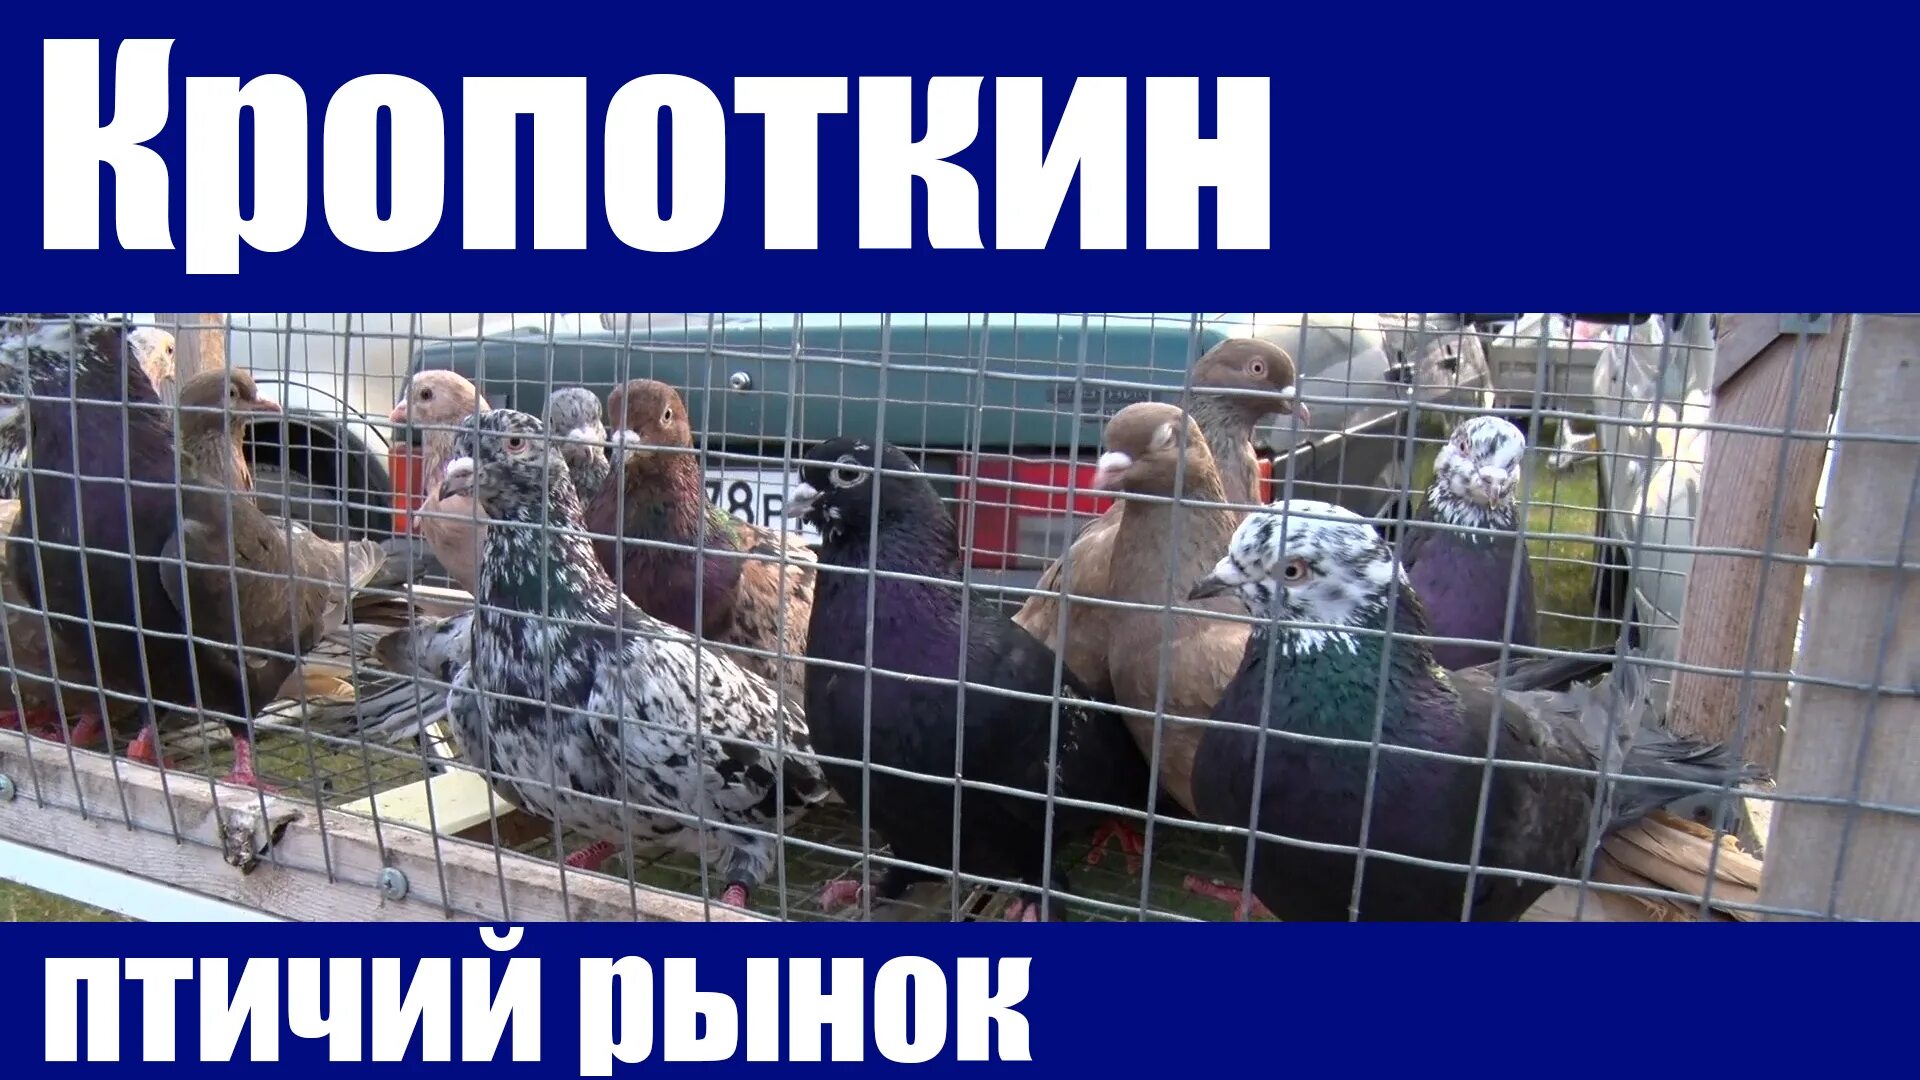 Птичий рынок в Кропоткине. Ярмарка голубей в Кропоткине. Голуби на птичьем рынке. Выставка голубей в Кропоткине.